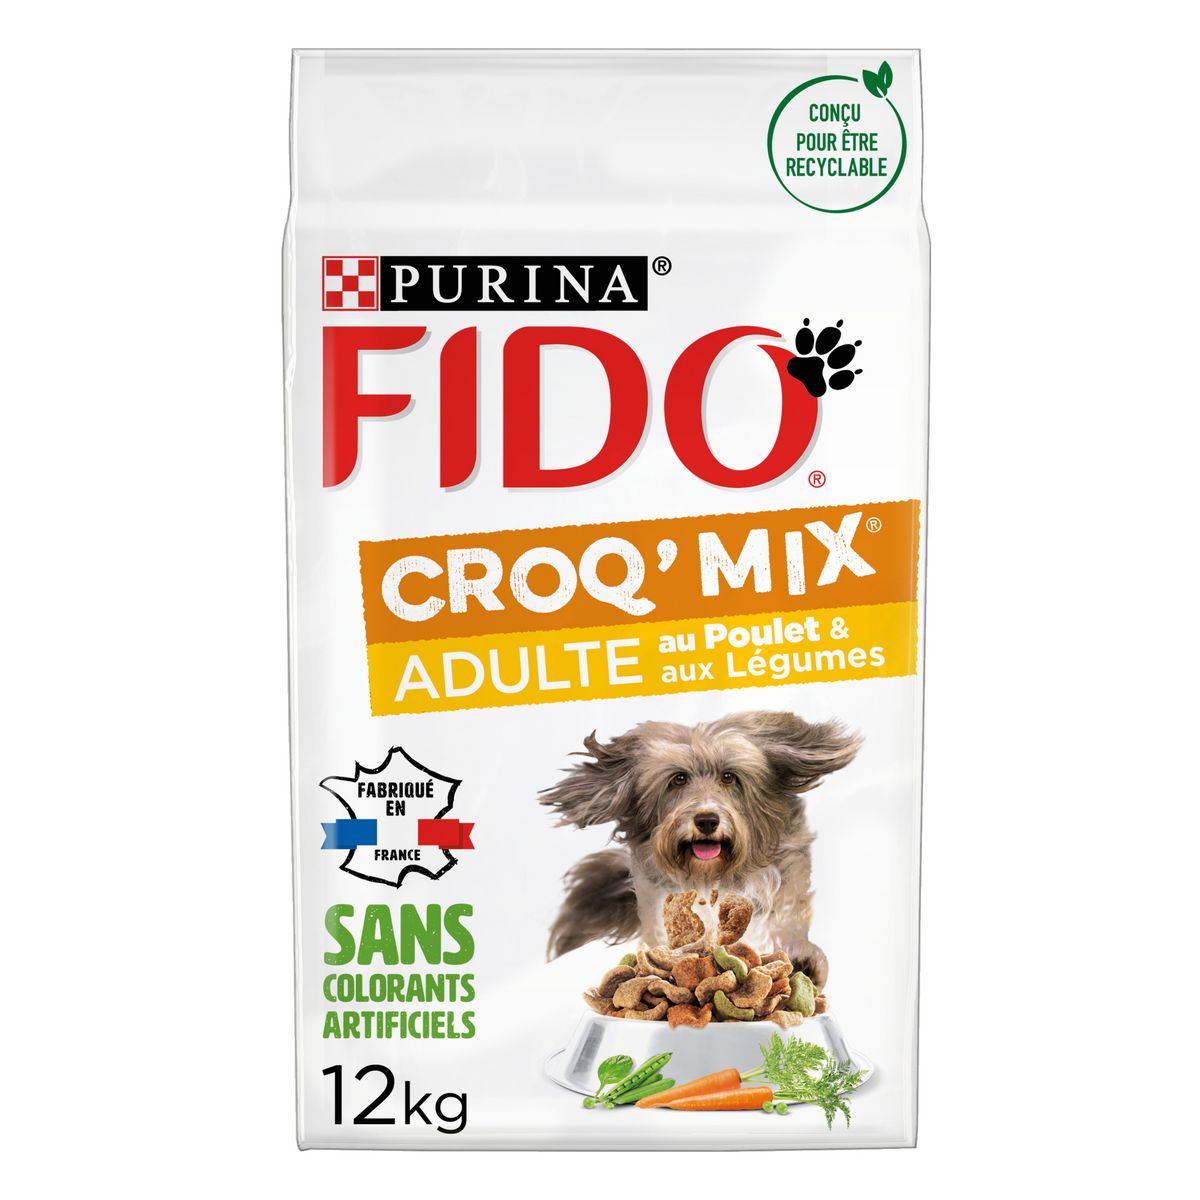 FIDO croq'mix croquettes au poulet et légumes pour chien adulte 12kg